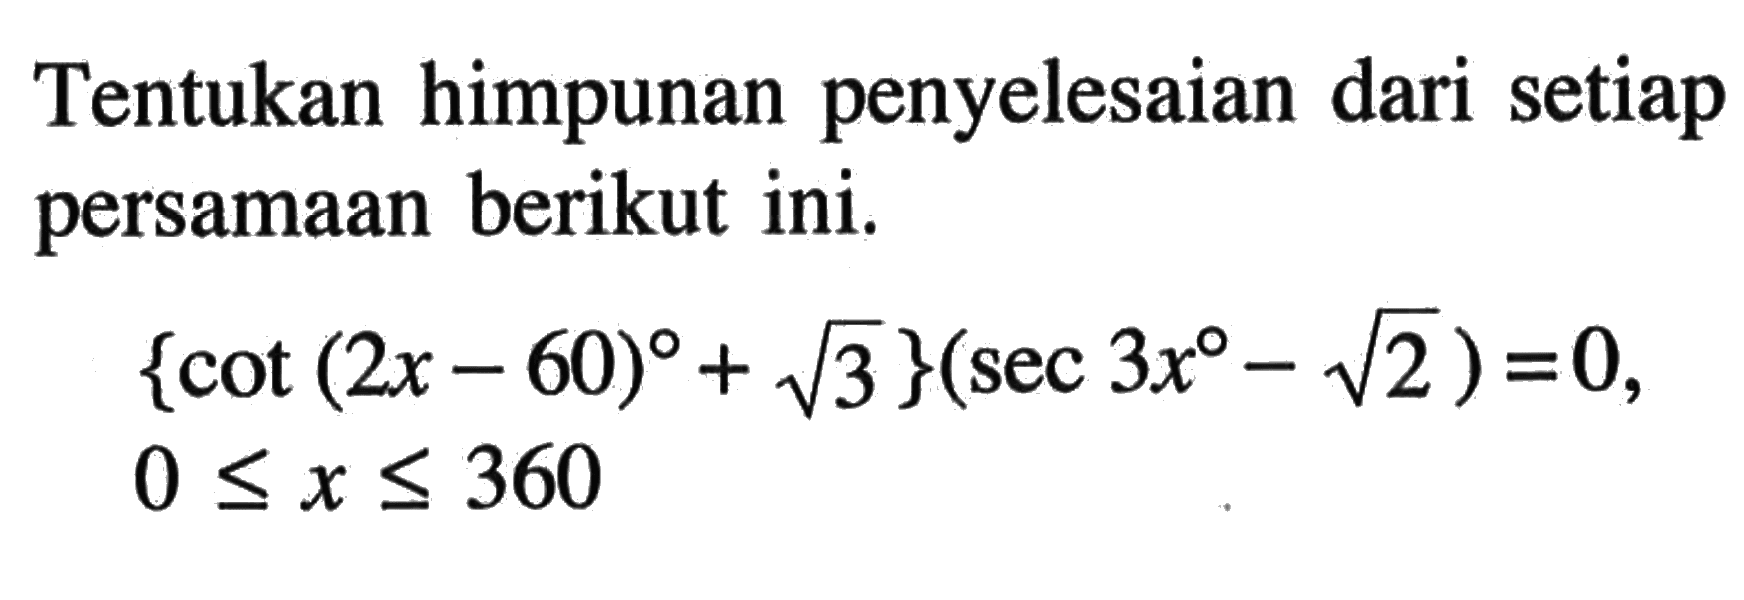 Tentukan himpunan penyelesaian dari setiap persamaan berikut ini. {cot(2x-60)+akar(3)}(sec 3x-akar(2))=0, 0<=x<=360.